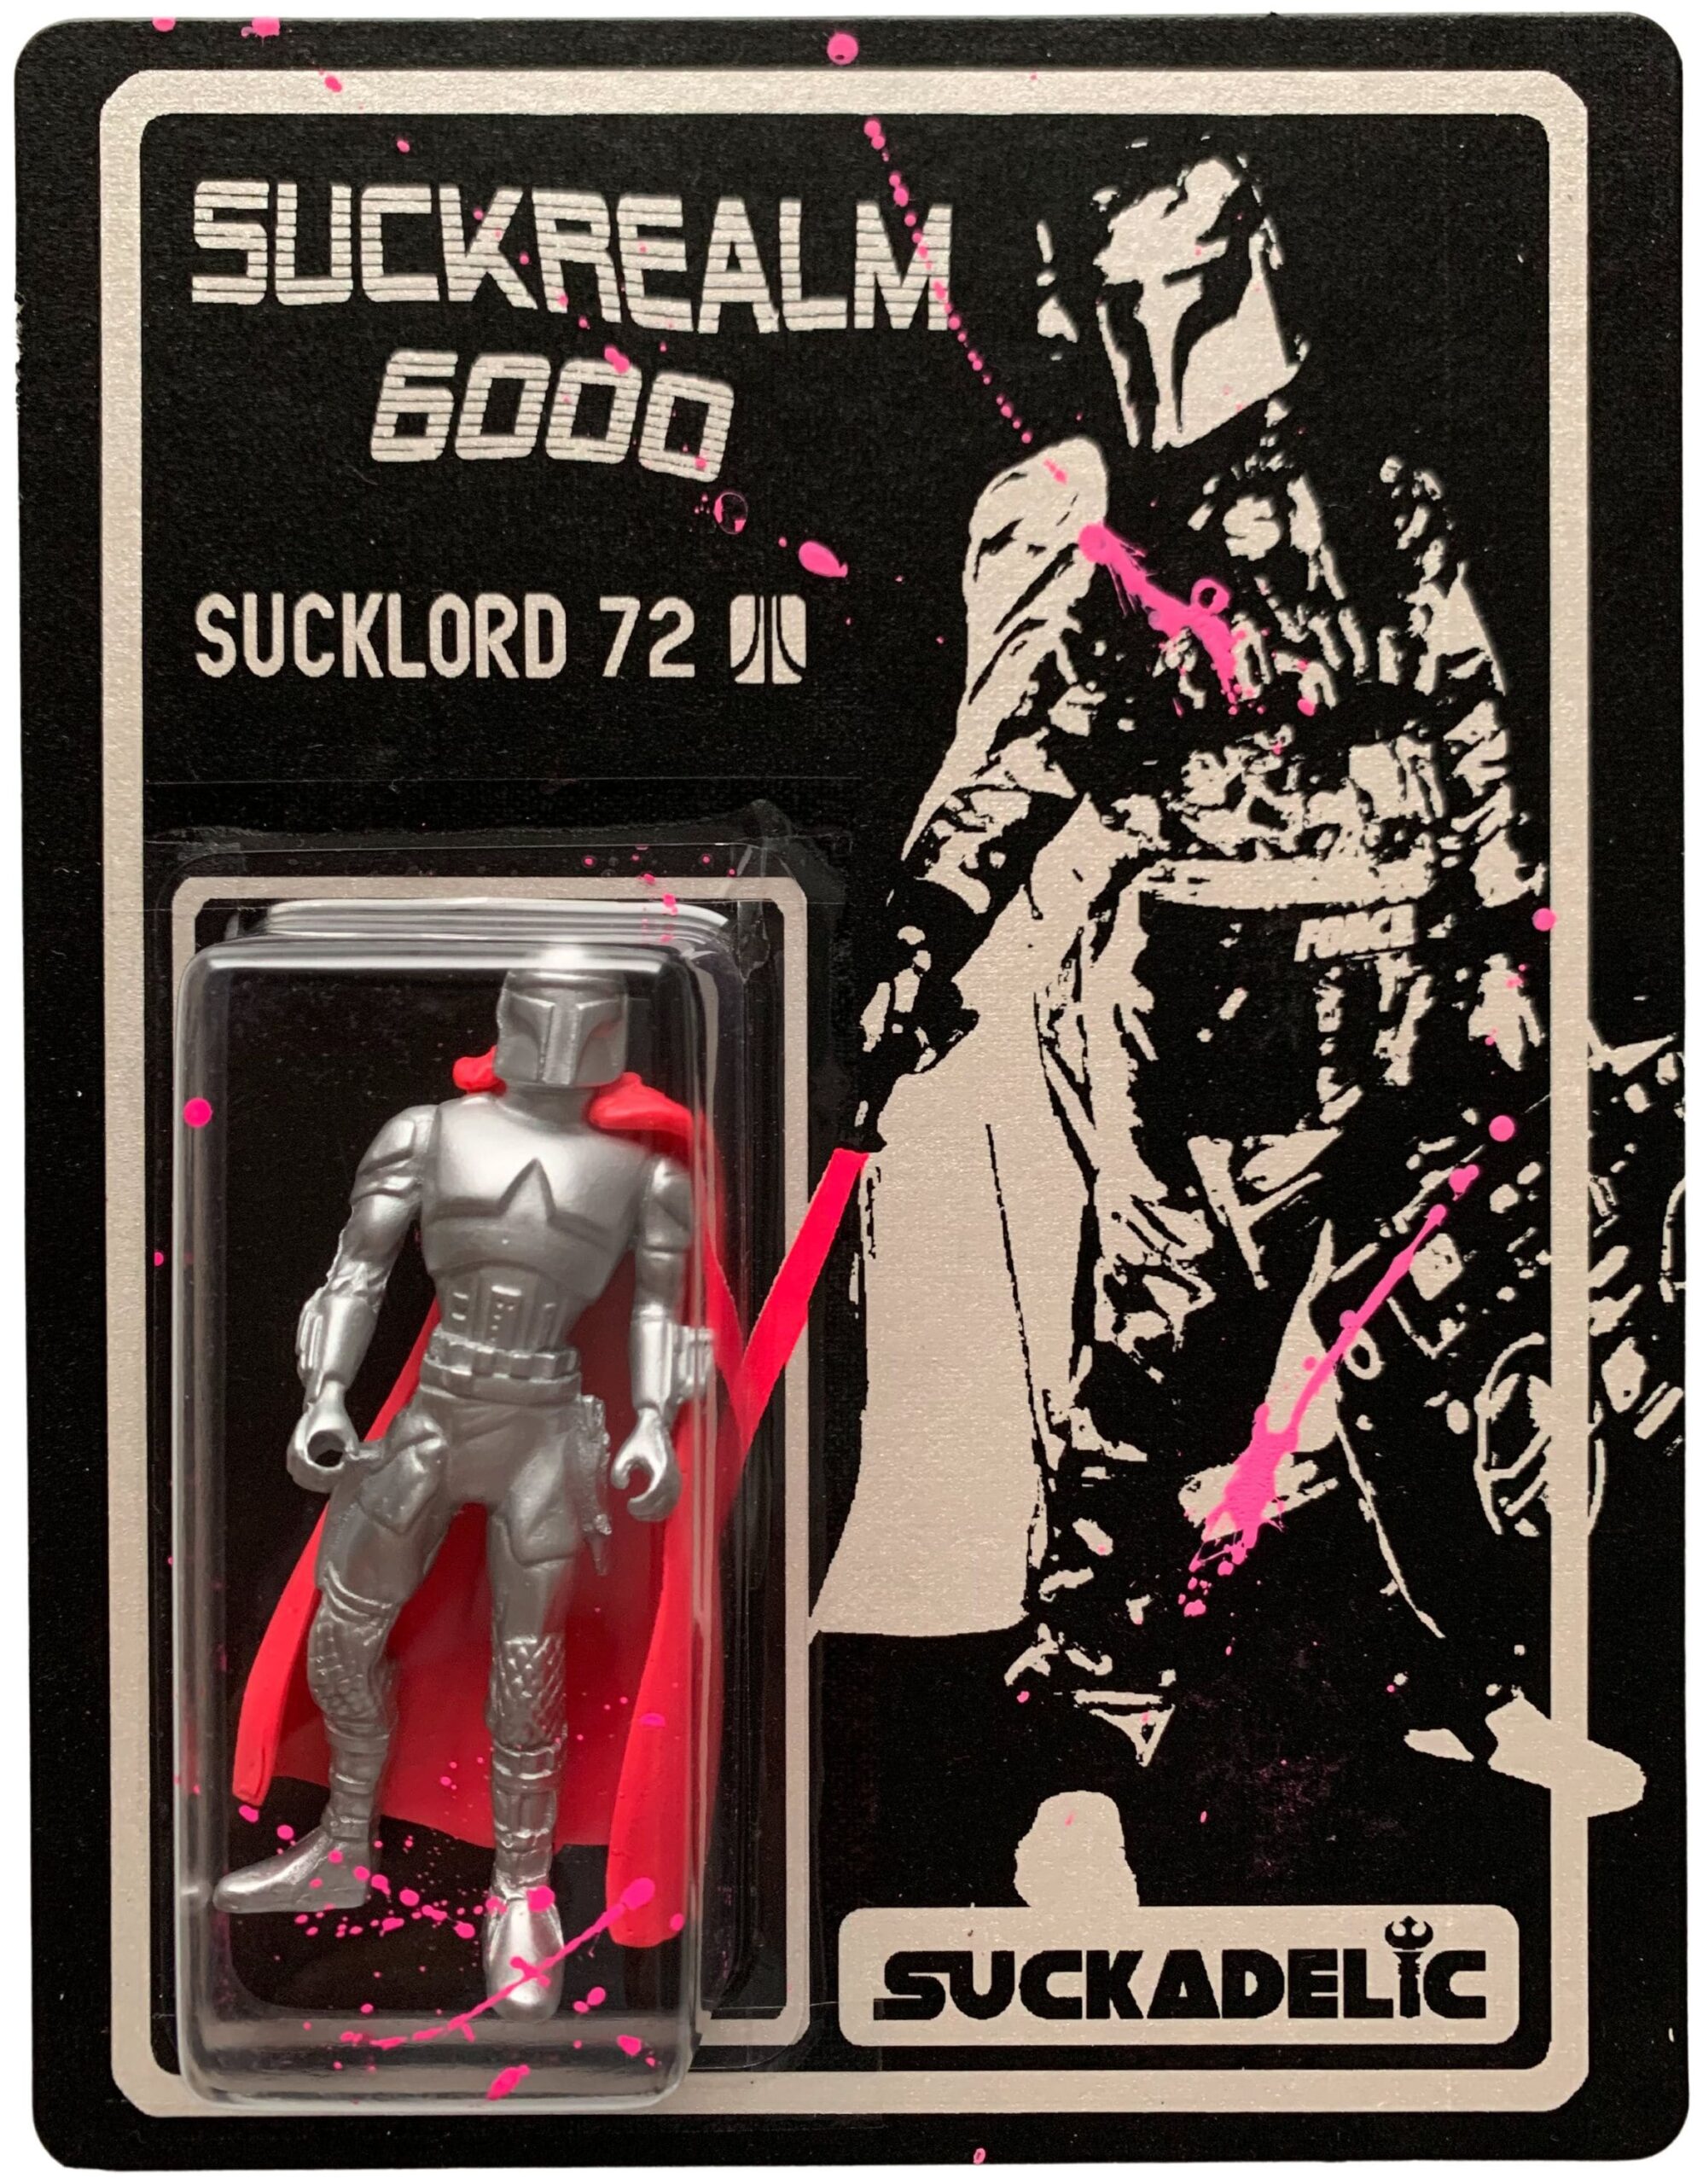 Suckrealm 6000: Sucklord 72 (srebrny)